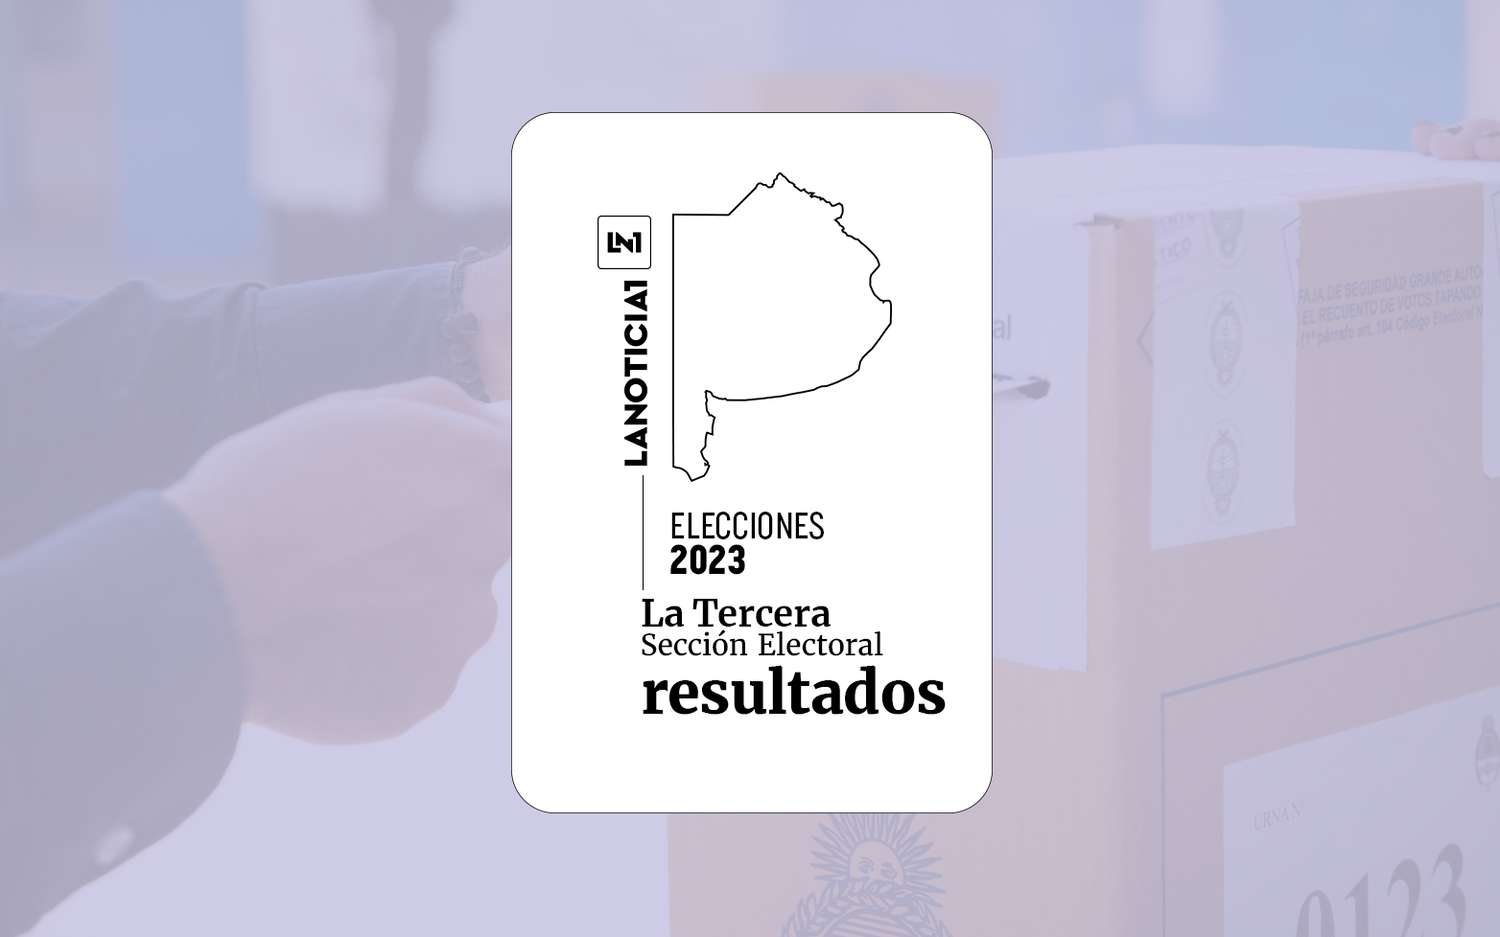 Resultados oficiales Elecciones Generales 2023: En la Tercera Sección, UxP arrasó con más del 50% de los votos